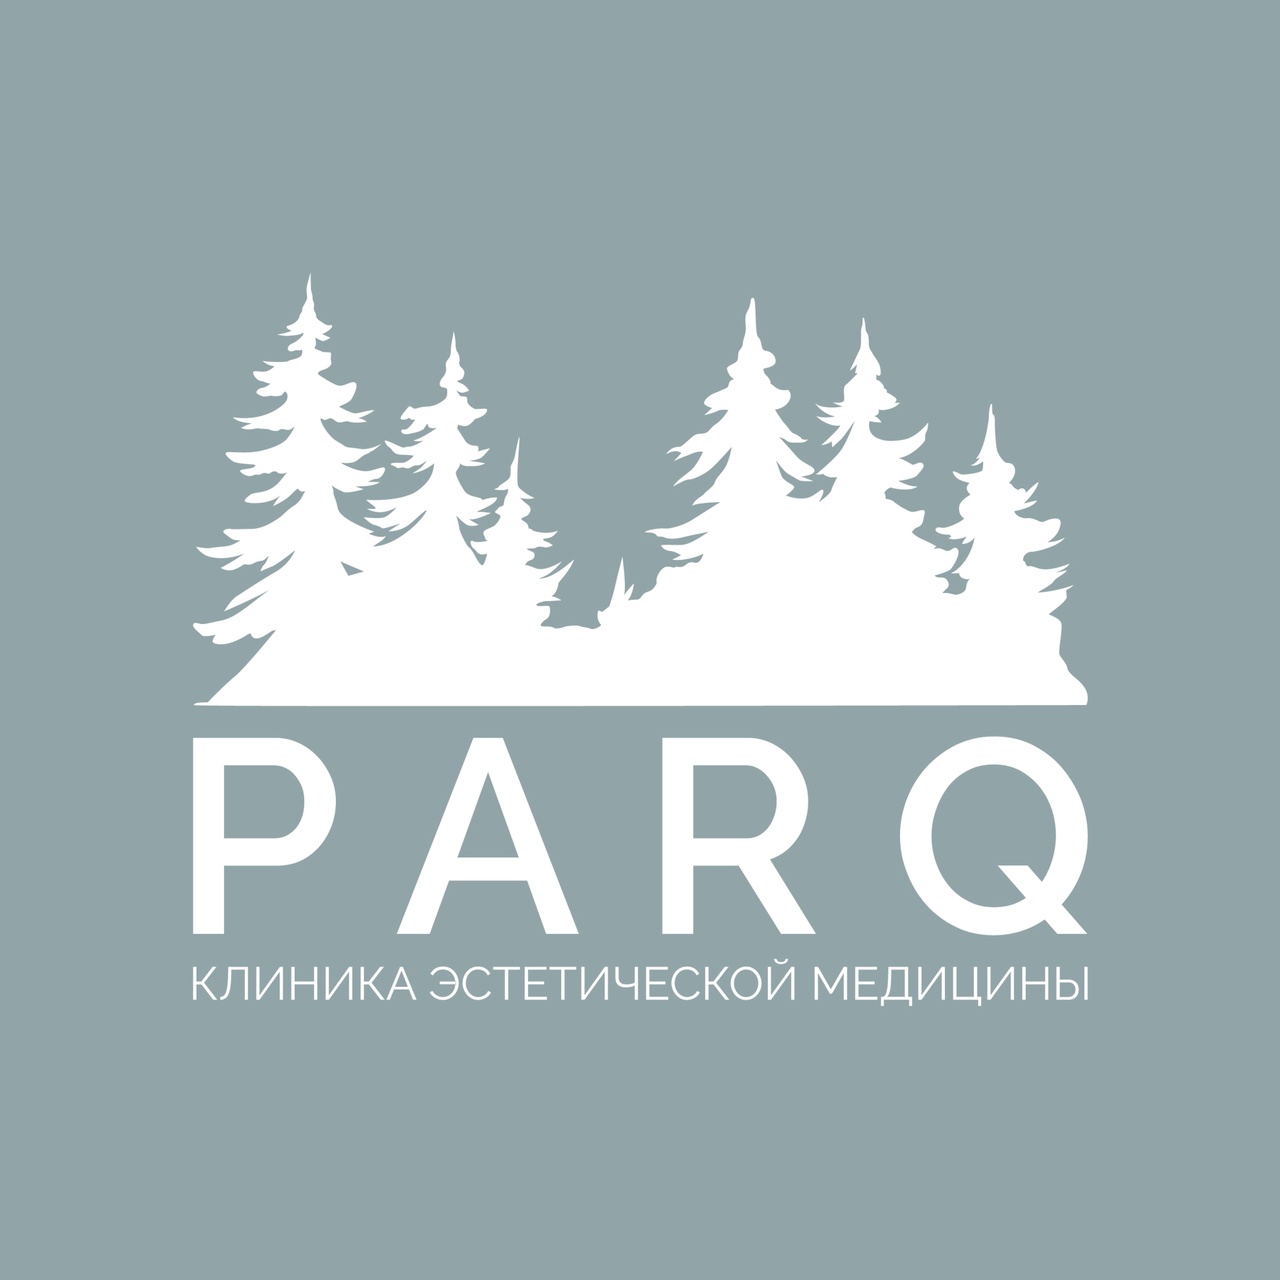 PARQ — Клиника эстетической медицины